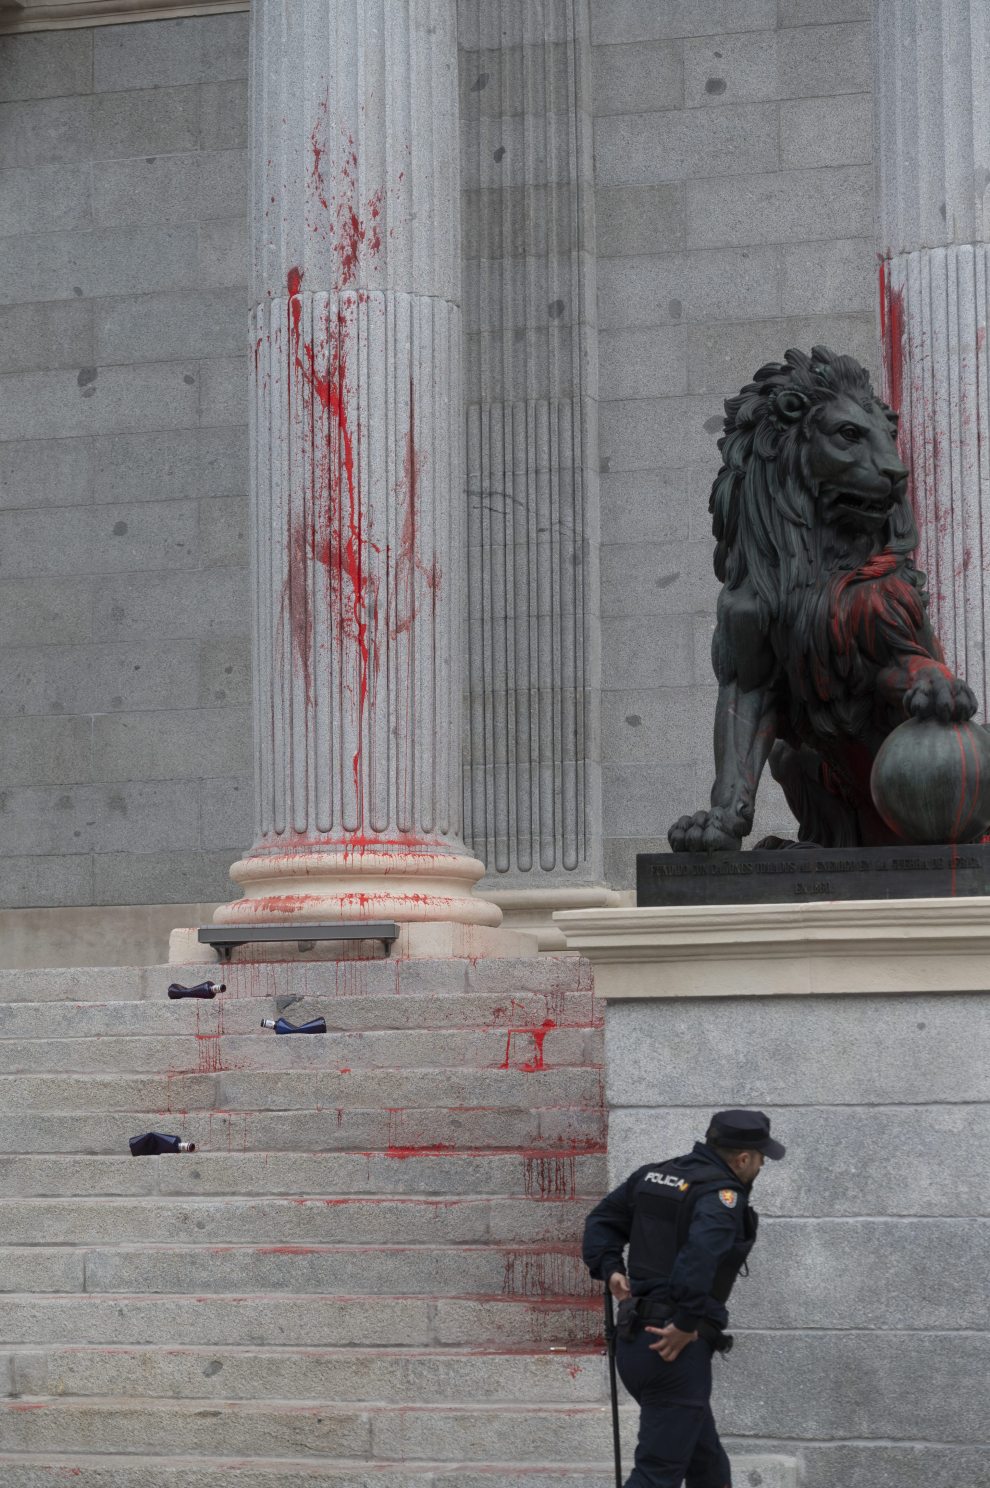 Fotos del acto vandálico con pintura en el Congreso